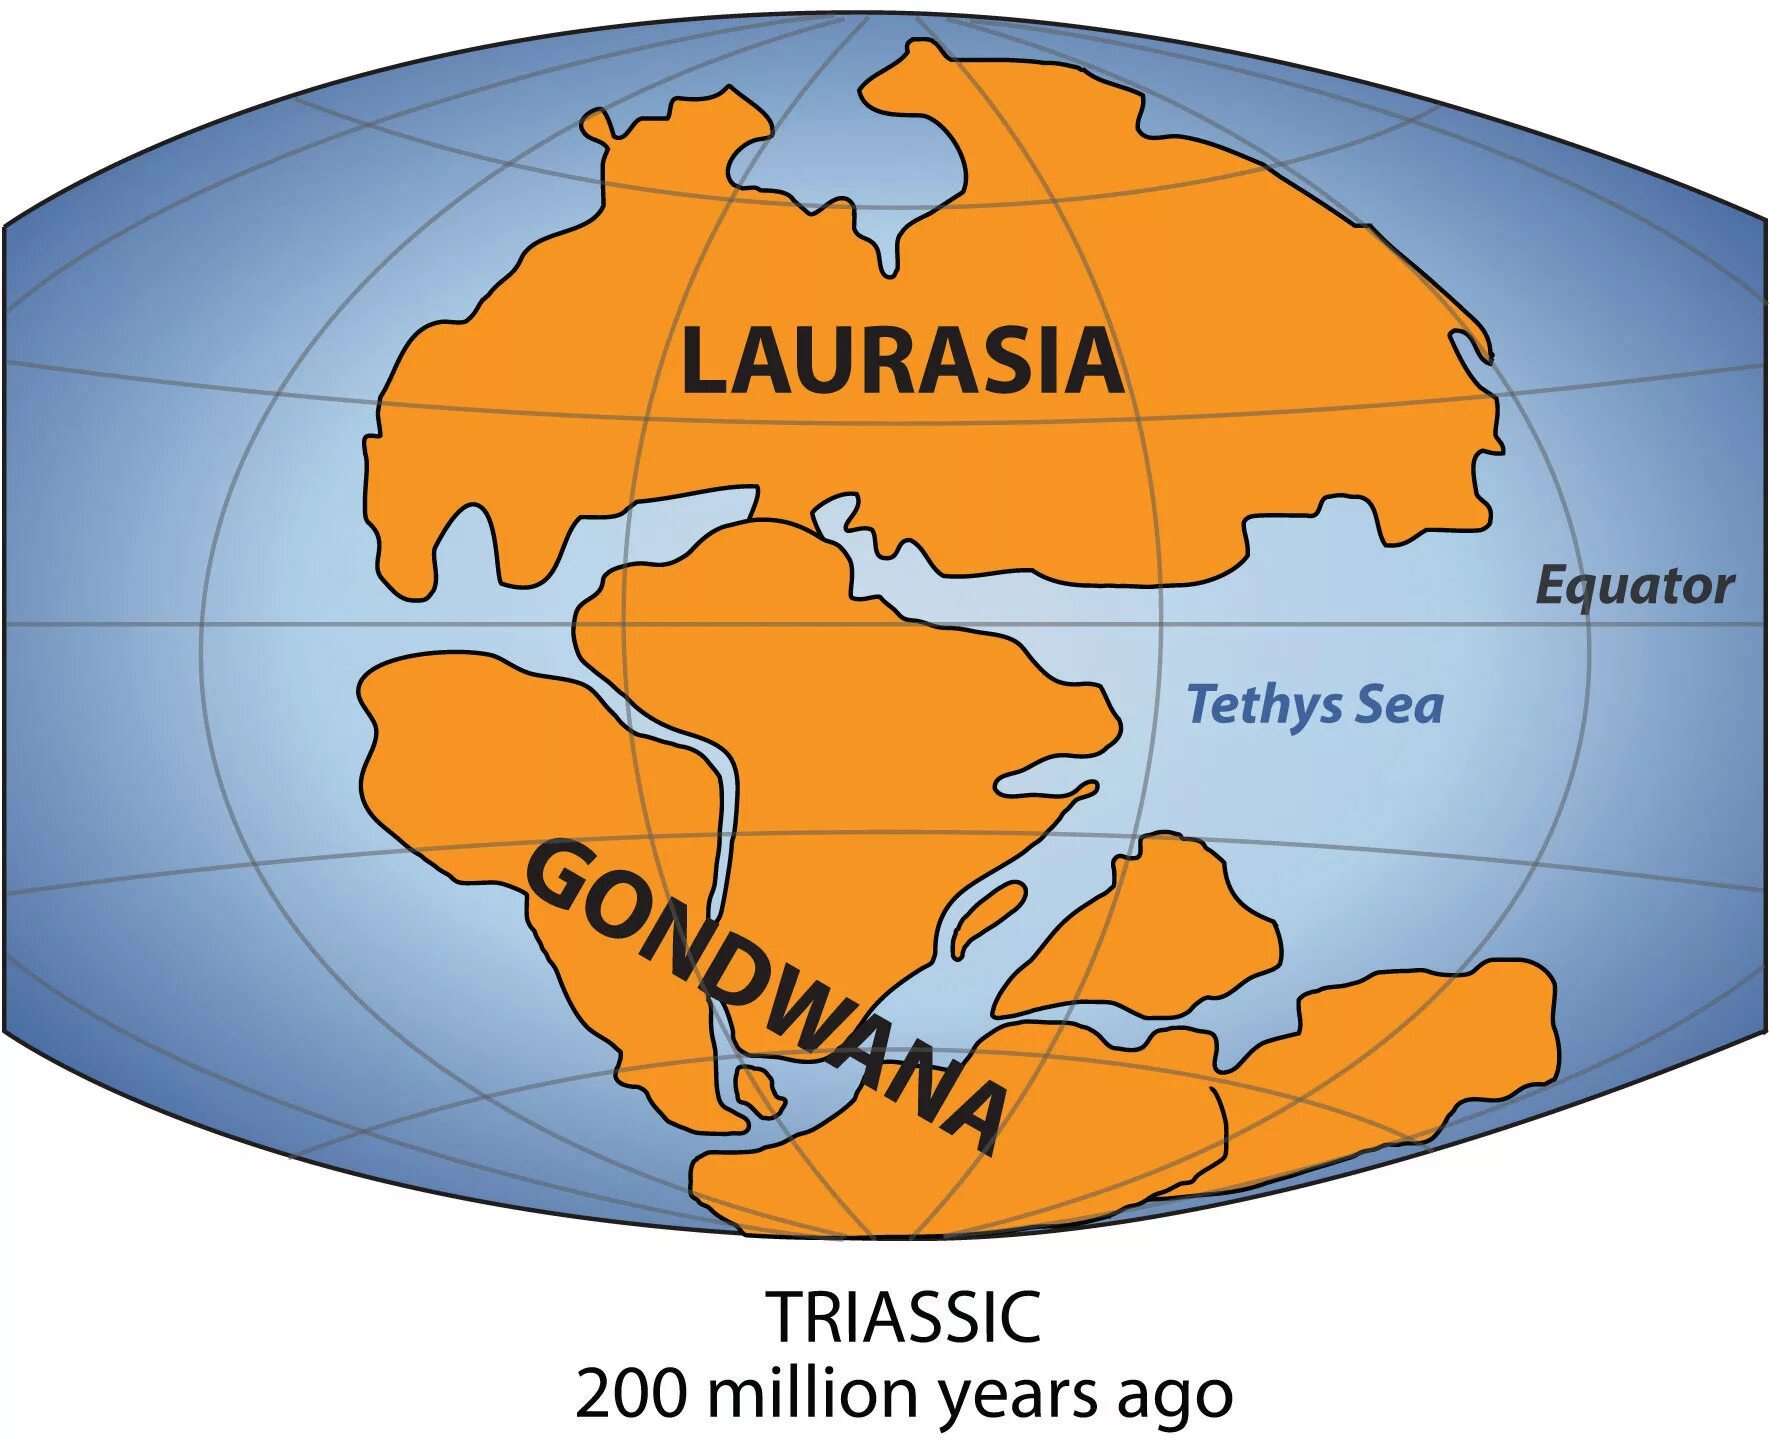 Название первых материков. Пангея Лавразия Гондвана Тетис. Гондвана и Лавразия материк. Гондвана и Лавразия Северная Америка. Суперконтинент Лавразия.